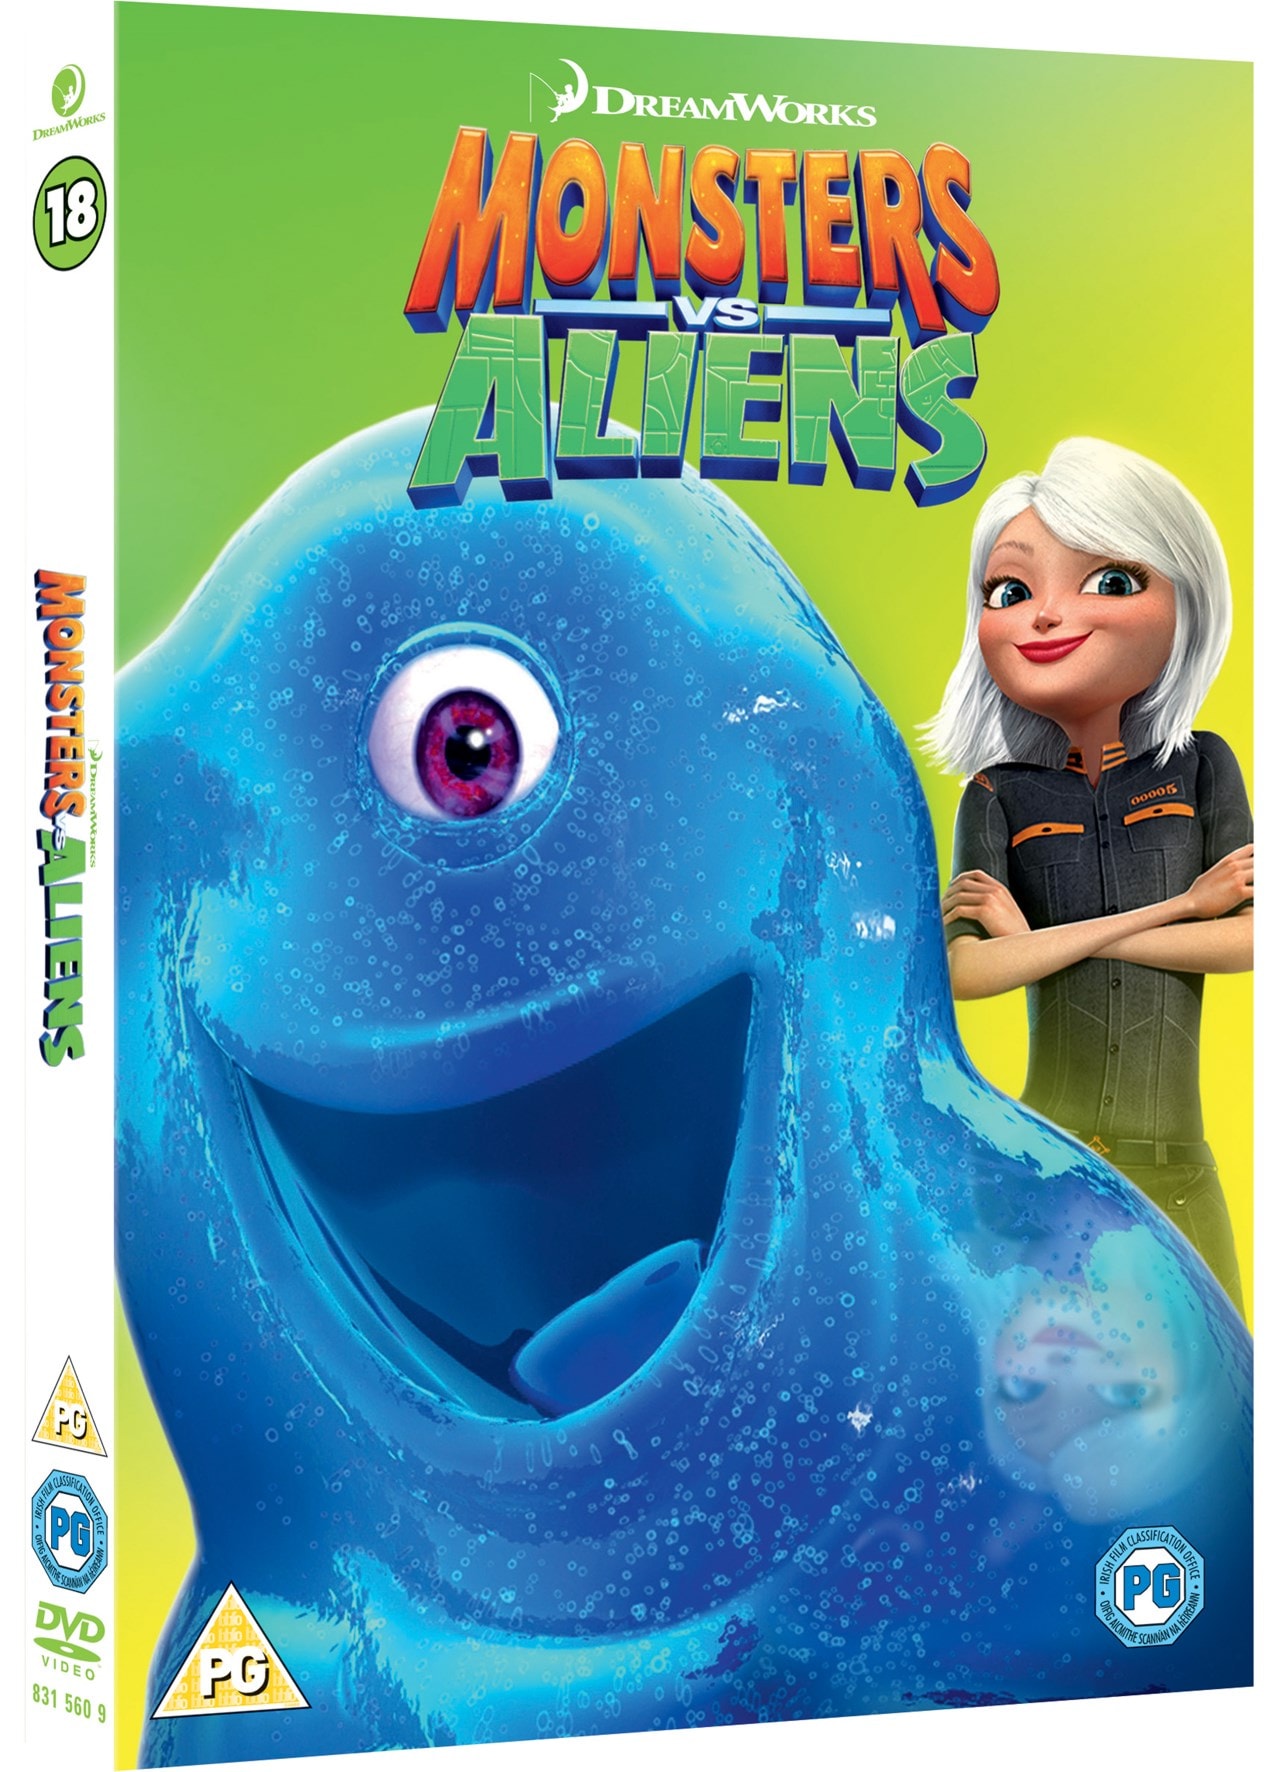 Monsters Vs Aliens | DVD | Free shipping over £20 | HMV Store